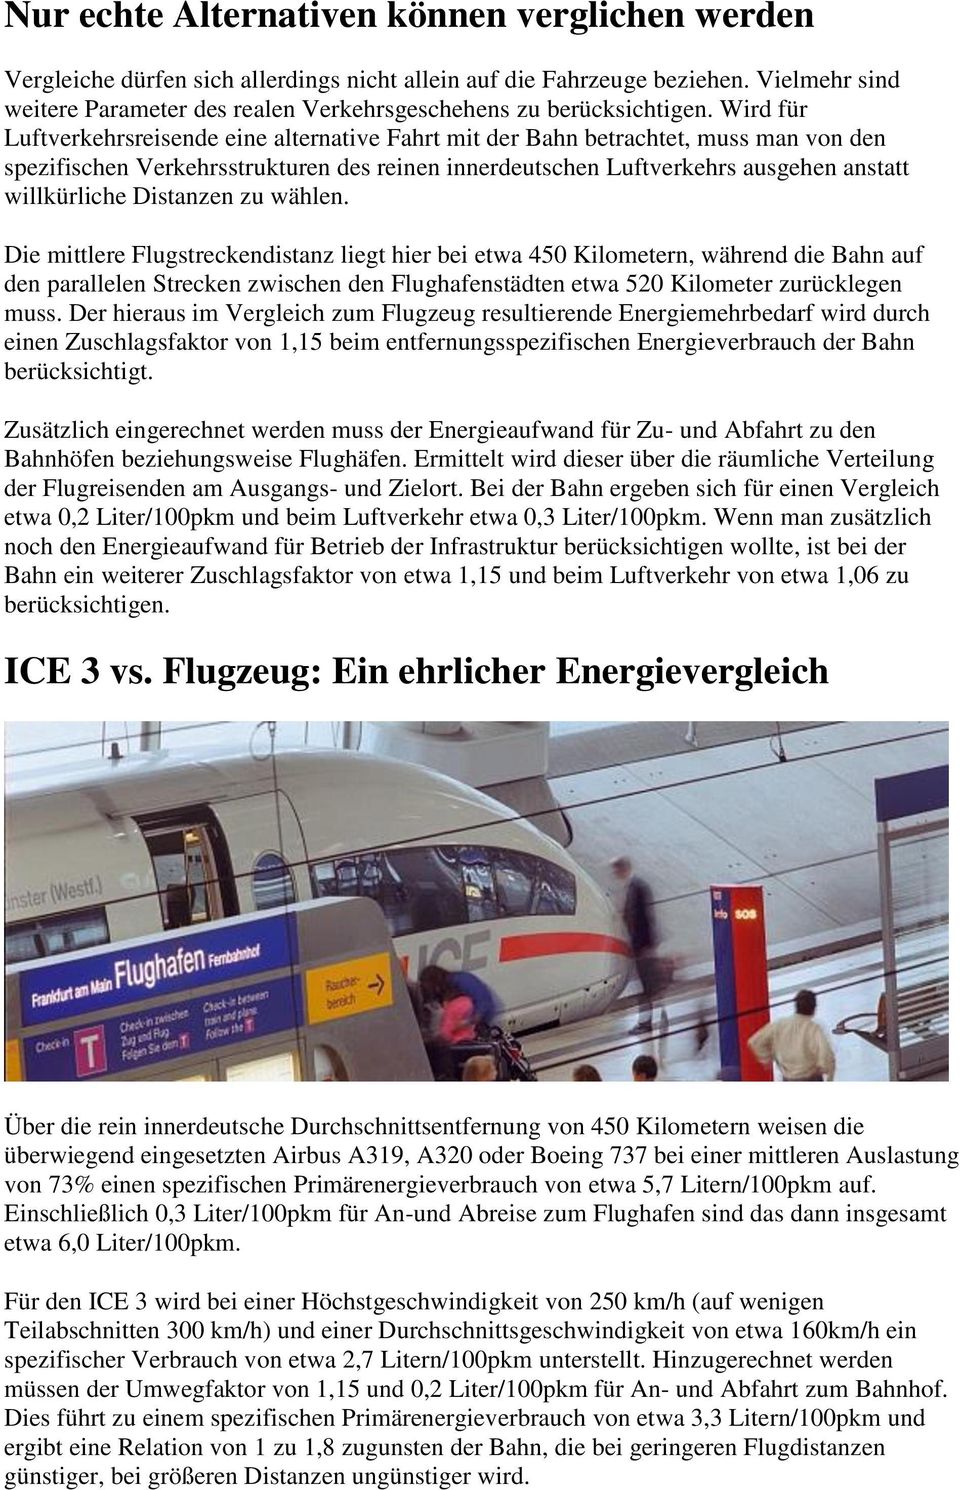 Wird für Luftverkehrsreisende eine alternative Fahrt mit der Bahn betrachtet, muss man von den spezifischen Verkehrsstrukturen des reinen innerdeutschen Luftverkehrs ausgehen anstatt willkürliche